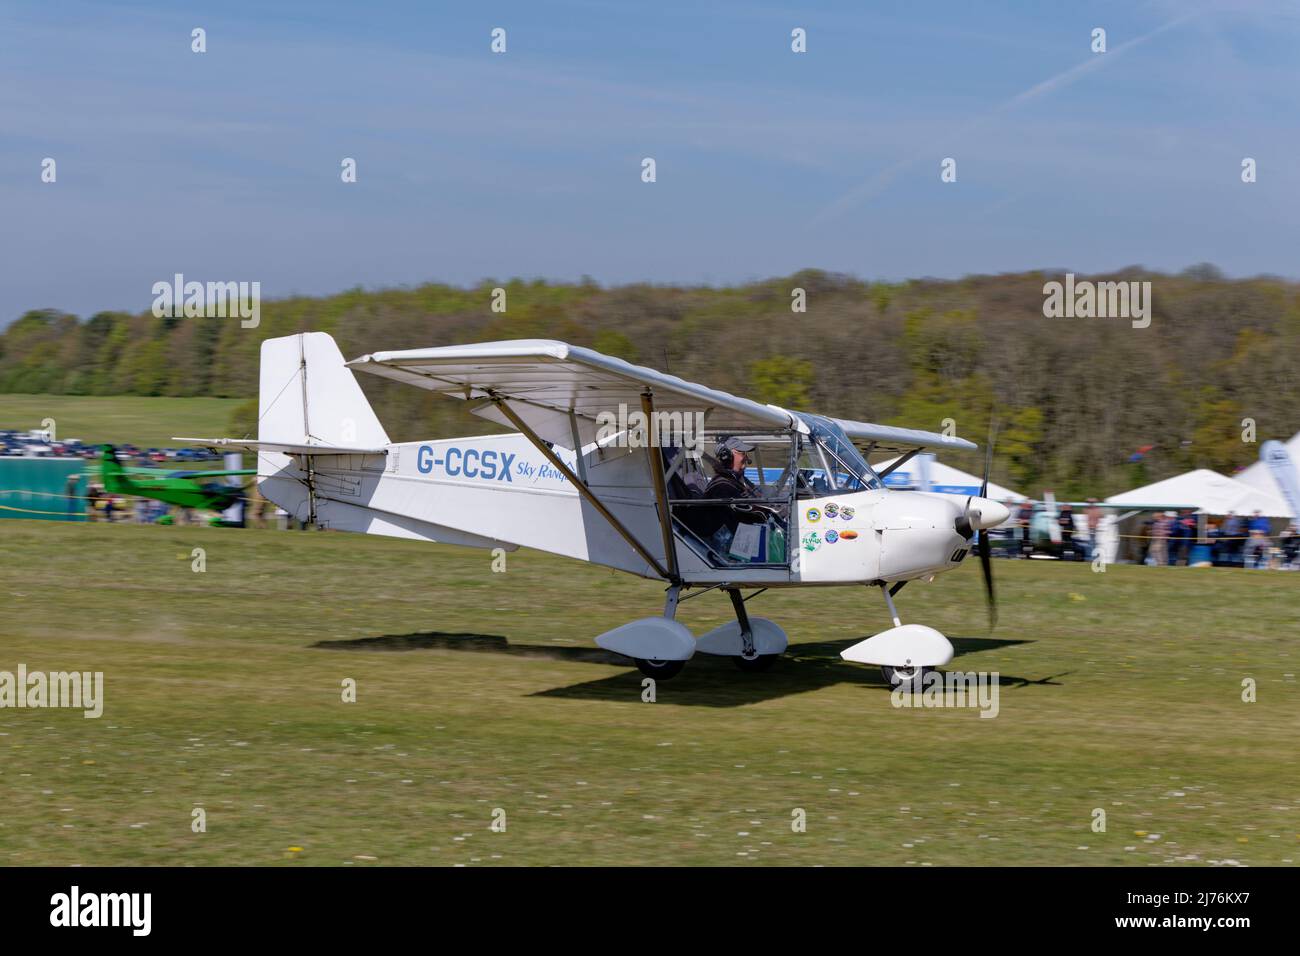 Le Skyranger Swift Microlight Aircraft G-CCSX se trouve à l'aérodrome de Popham, dans le Hampshire, en Angleterre, pour assister à la rencontre aérienne annuelle de l'avion microlight Banque D'Images